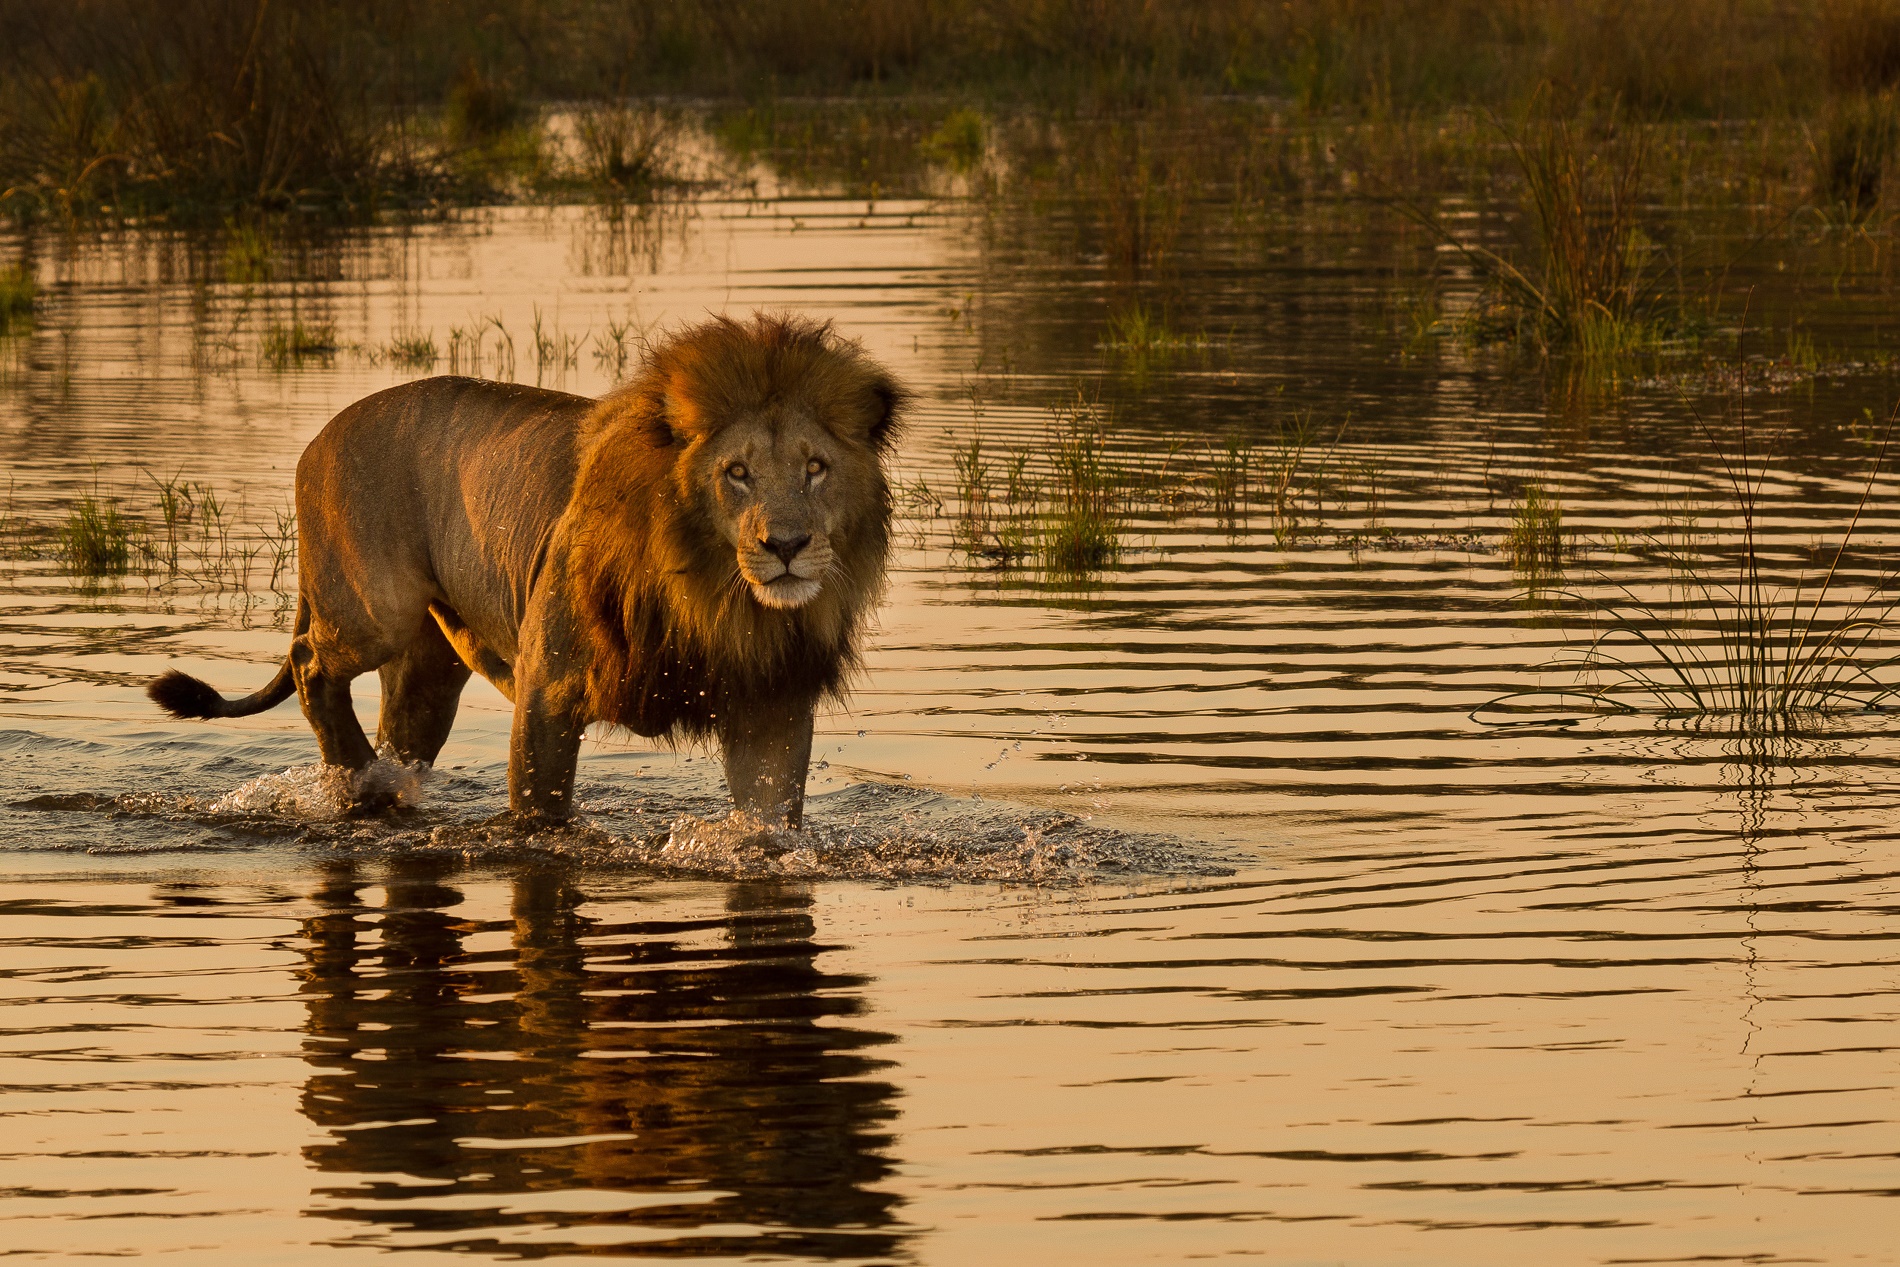 A lion in Botswana